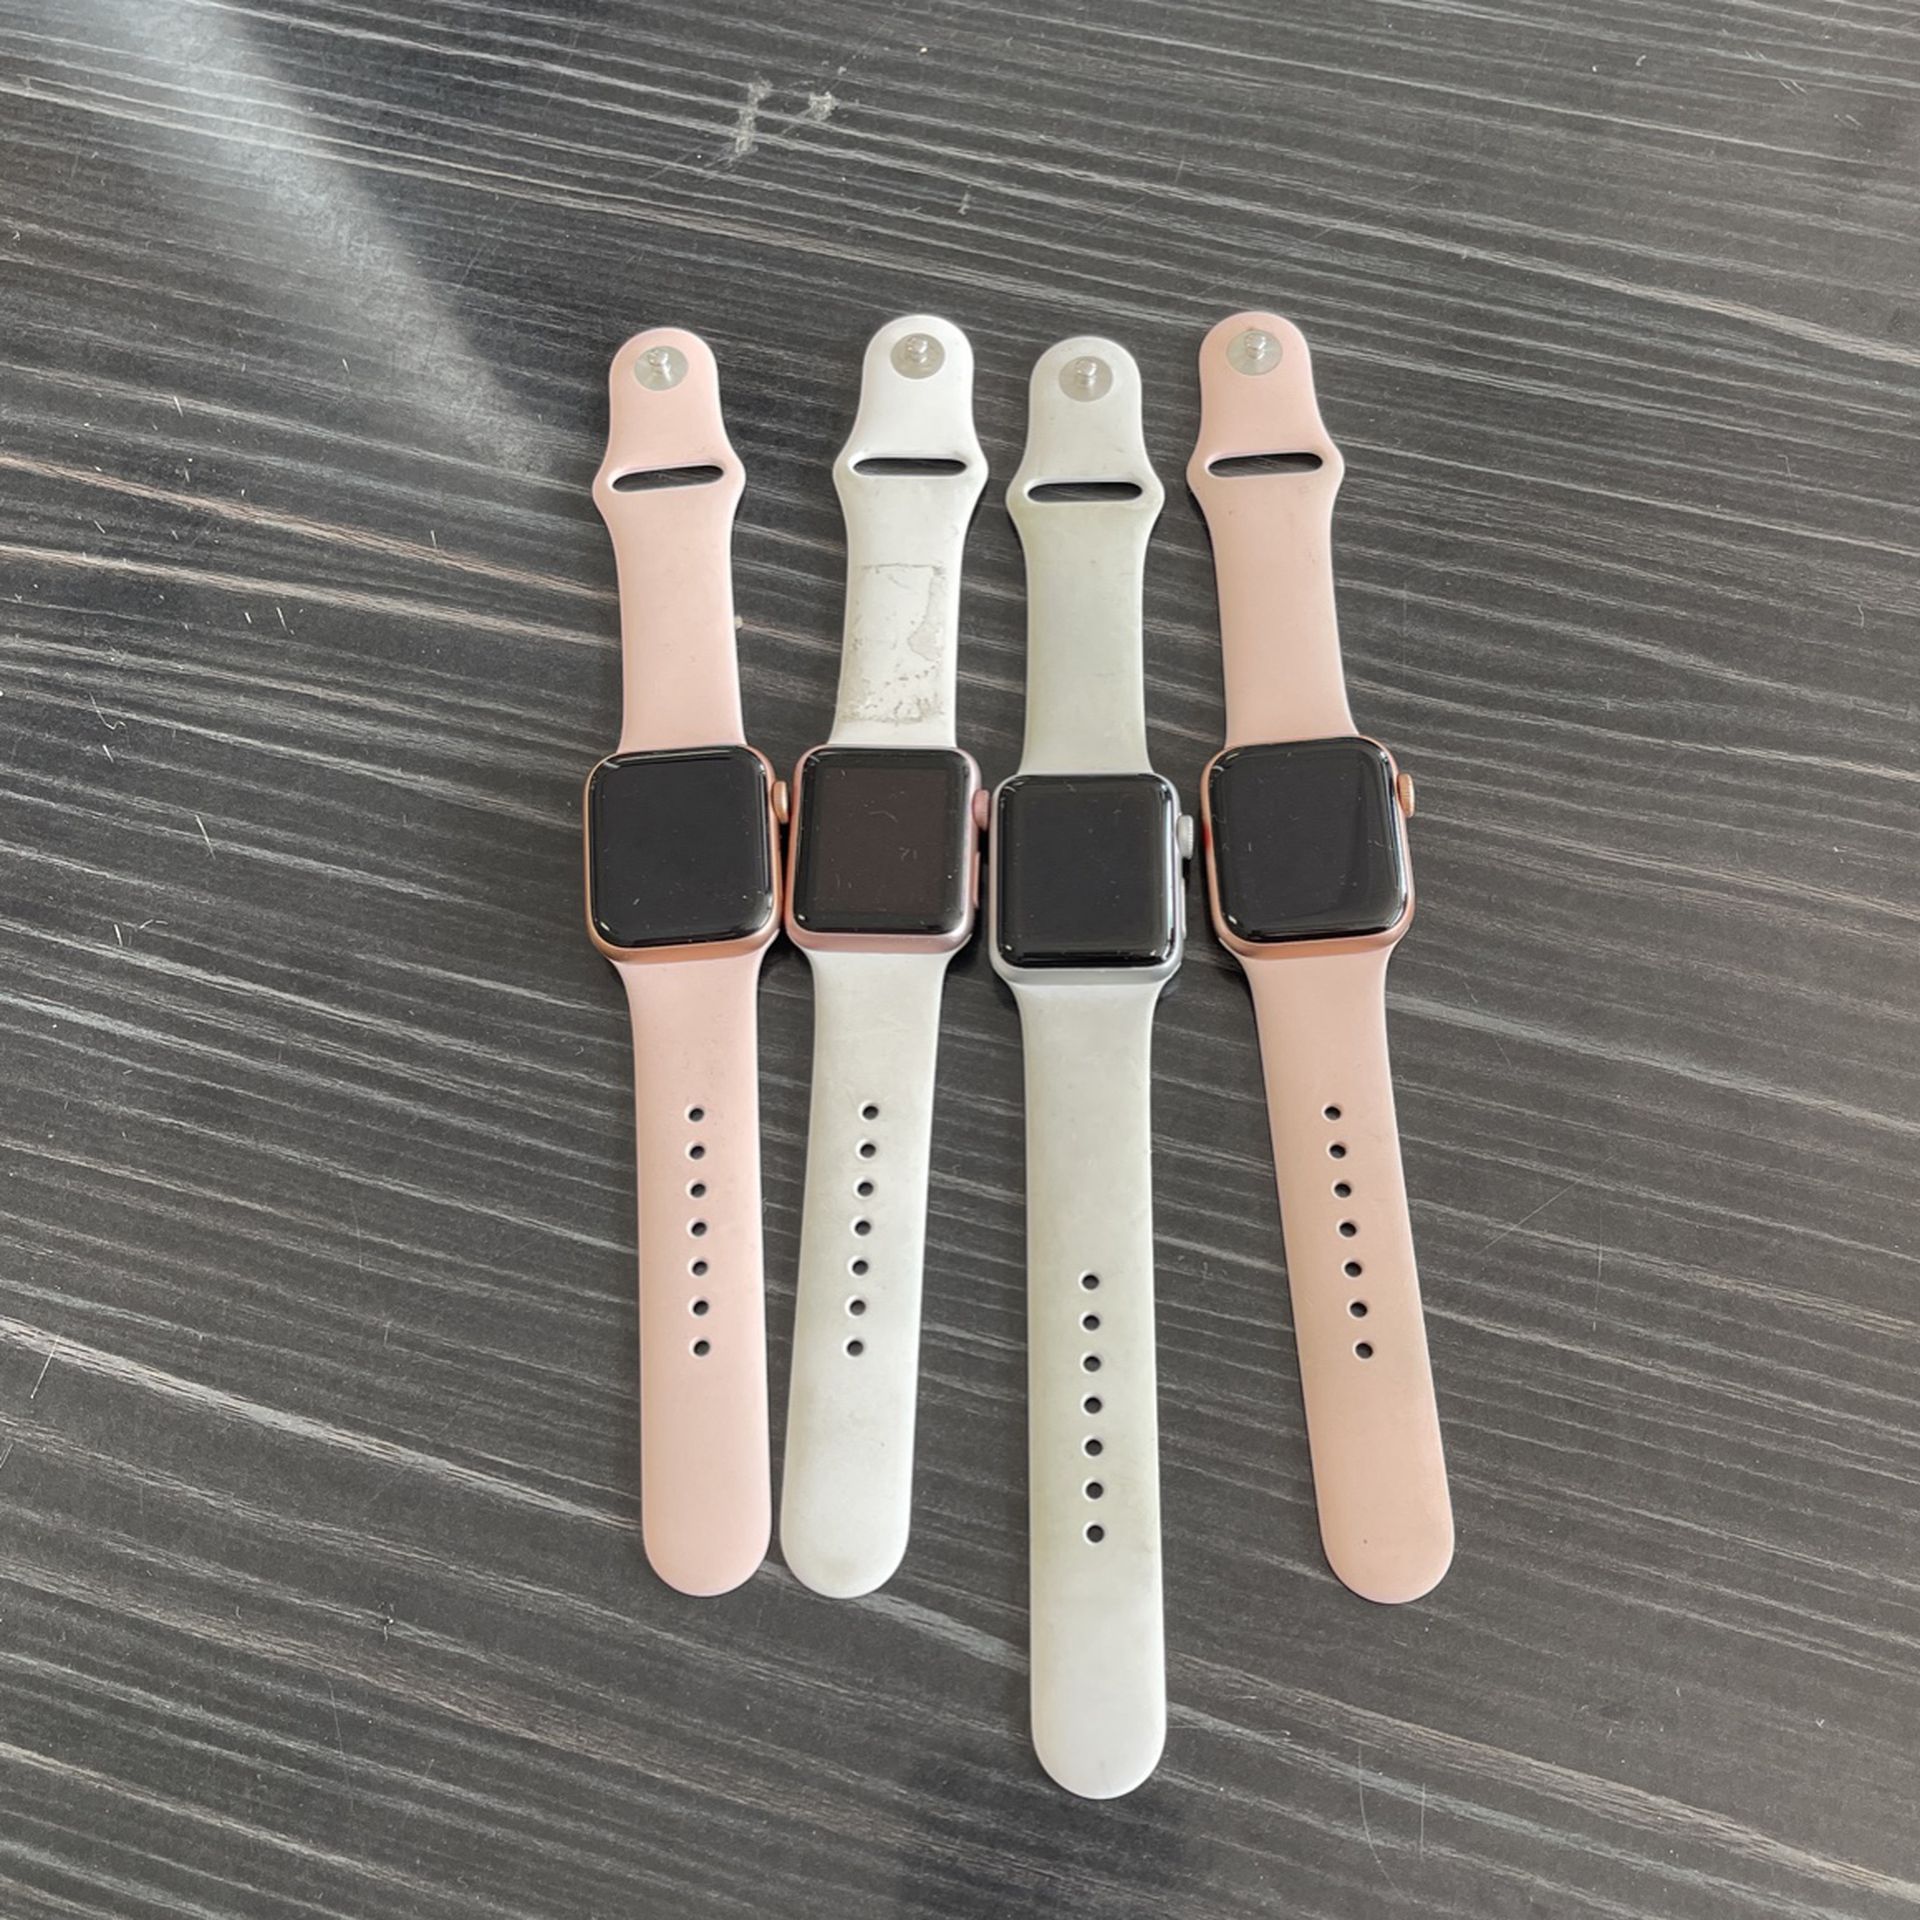 Apple Watch Se 40mm LTE Gps 